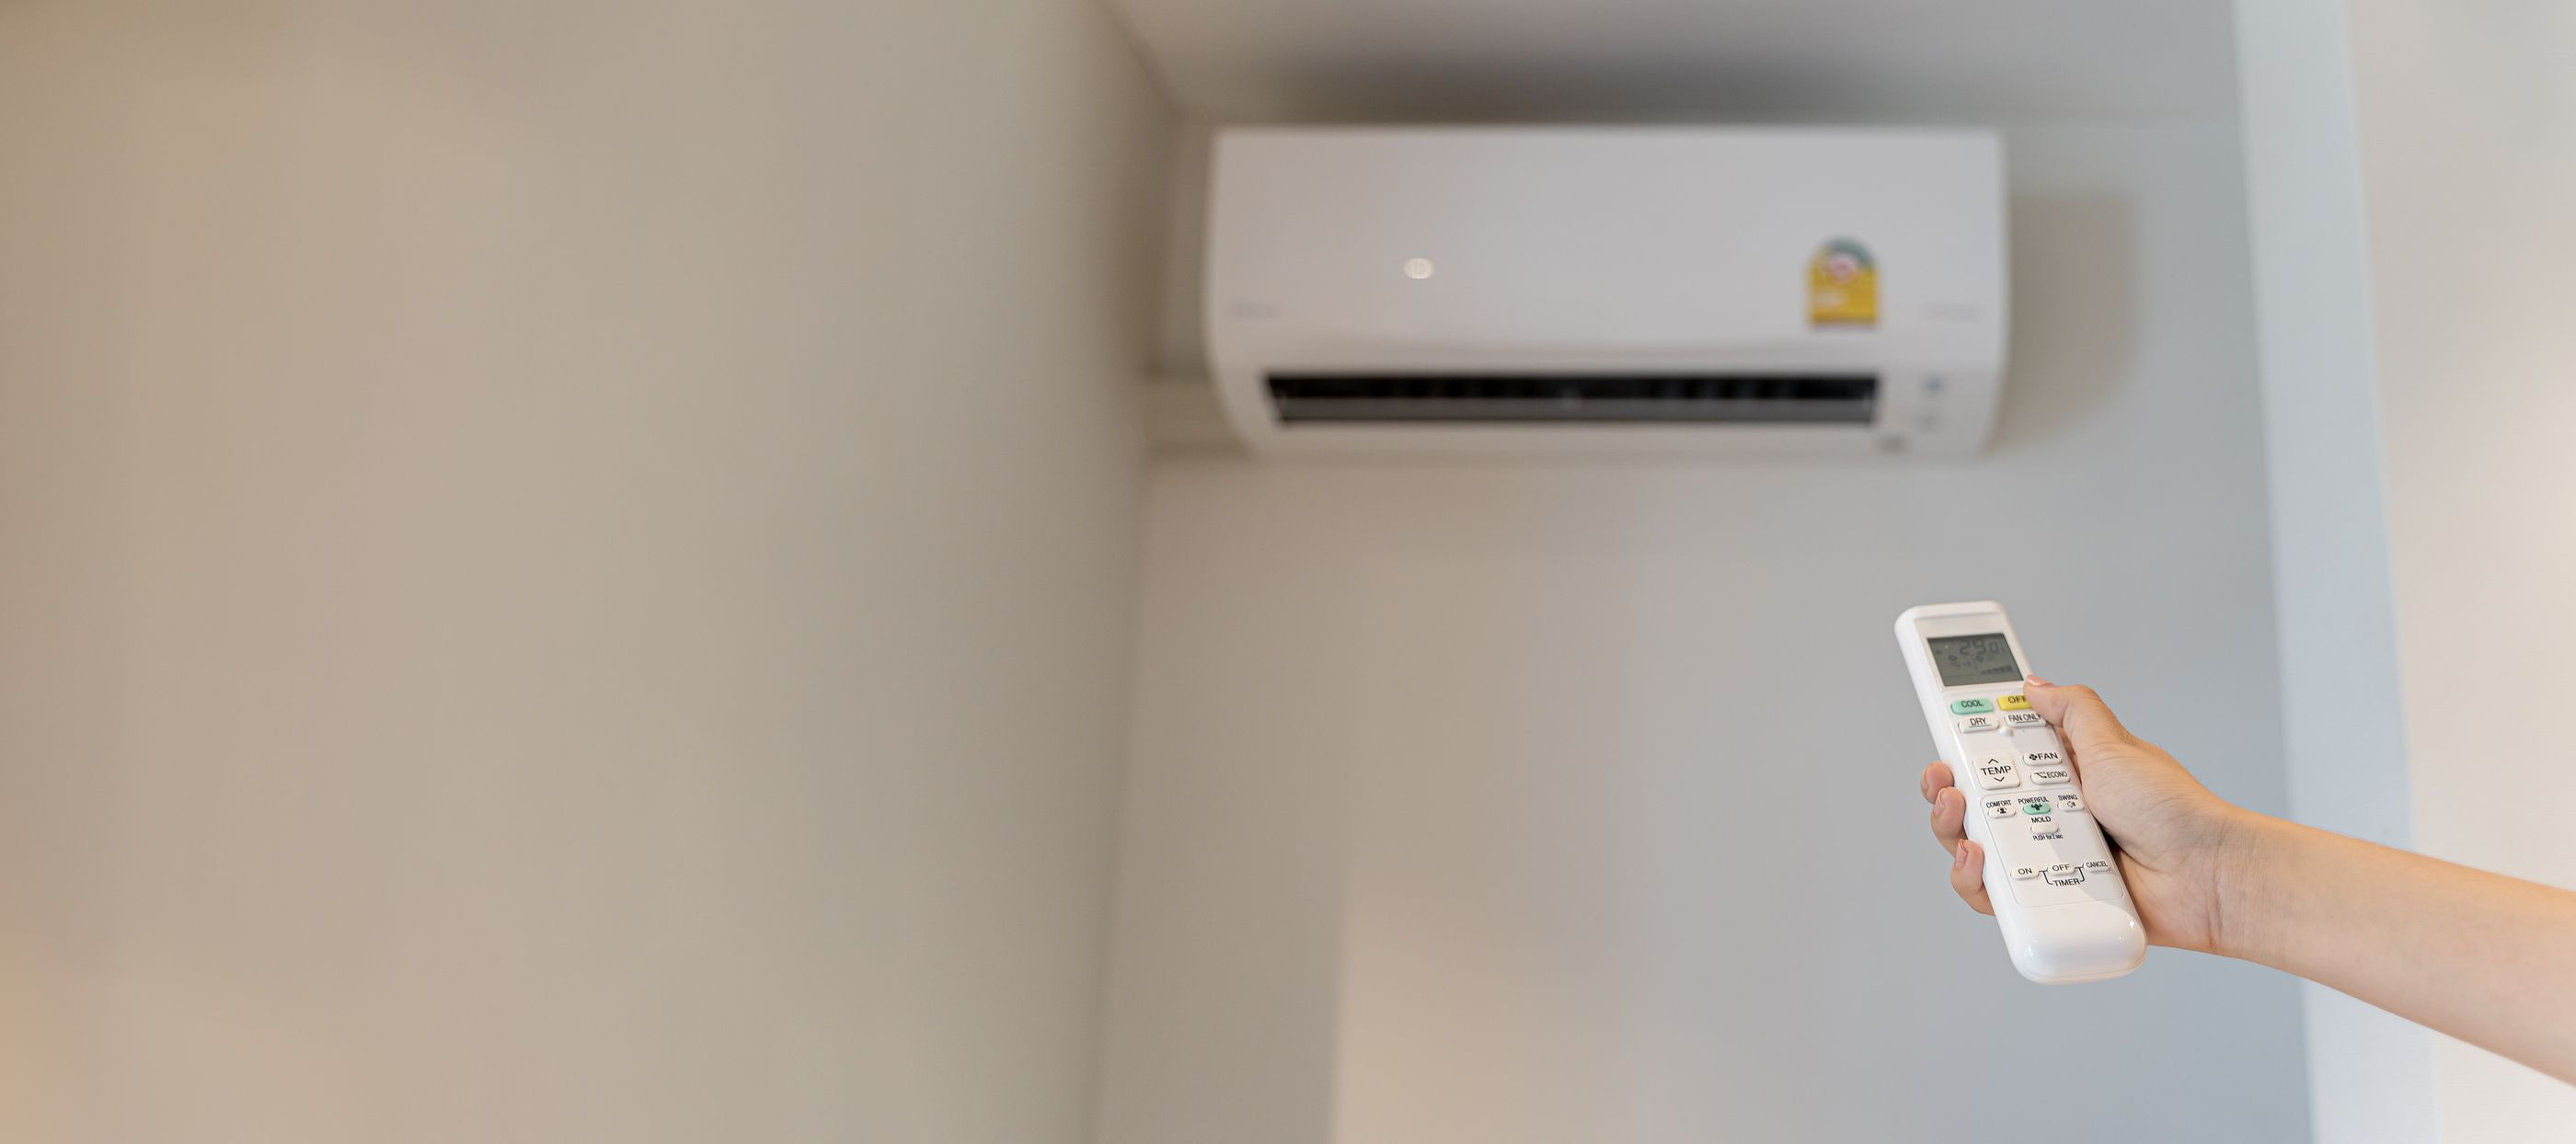 ¿Me pueden multar por poner el aire acondicionado en mi casa?